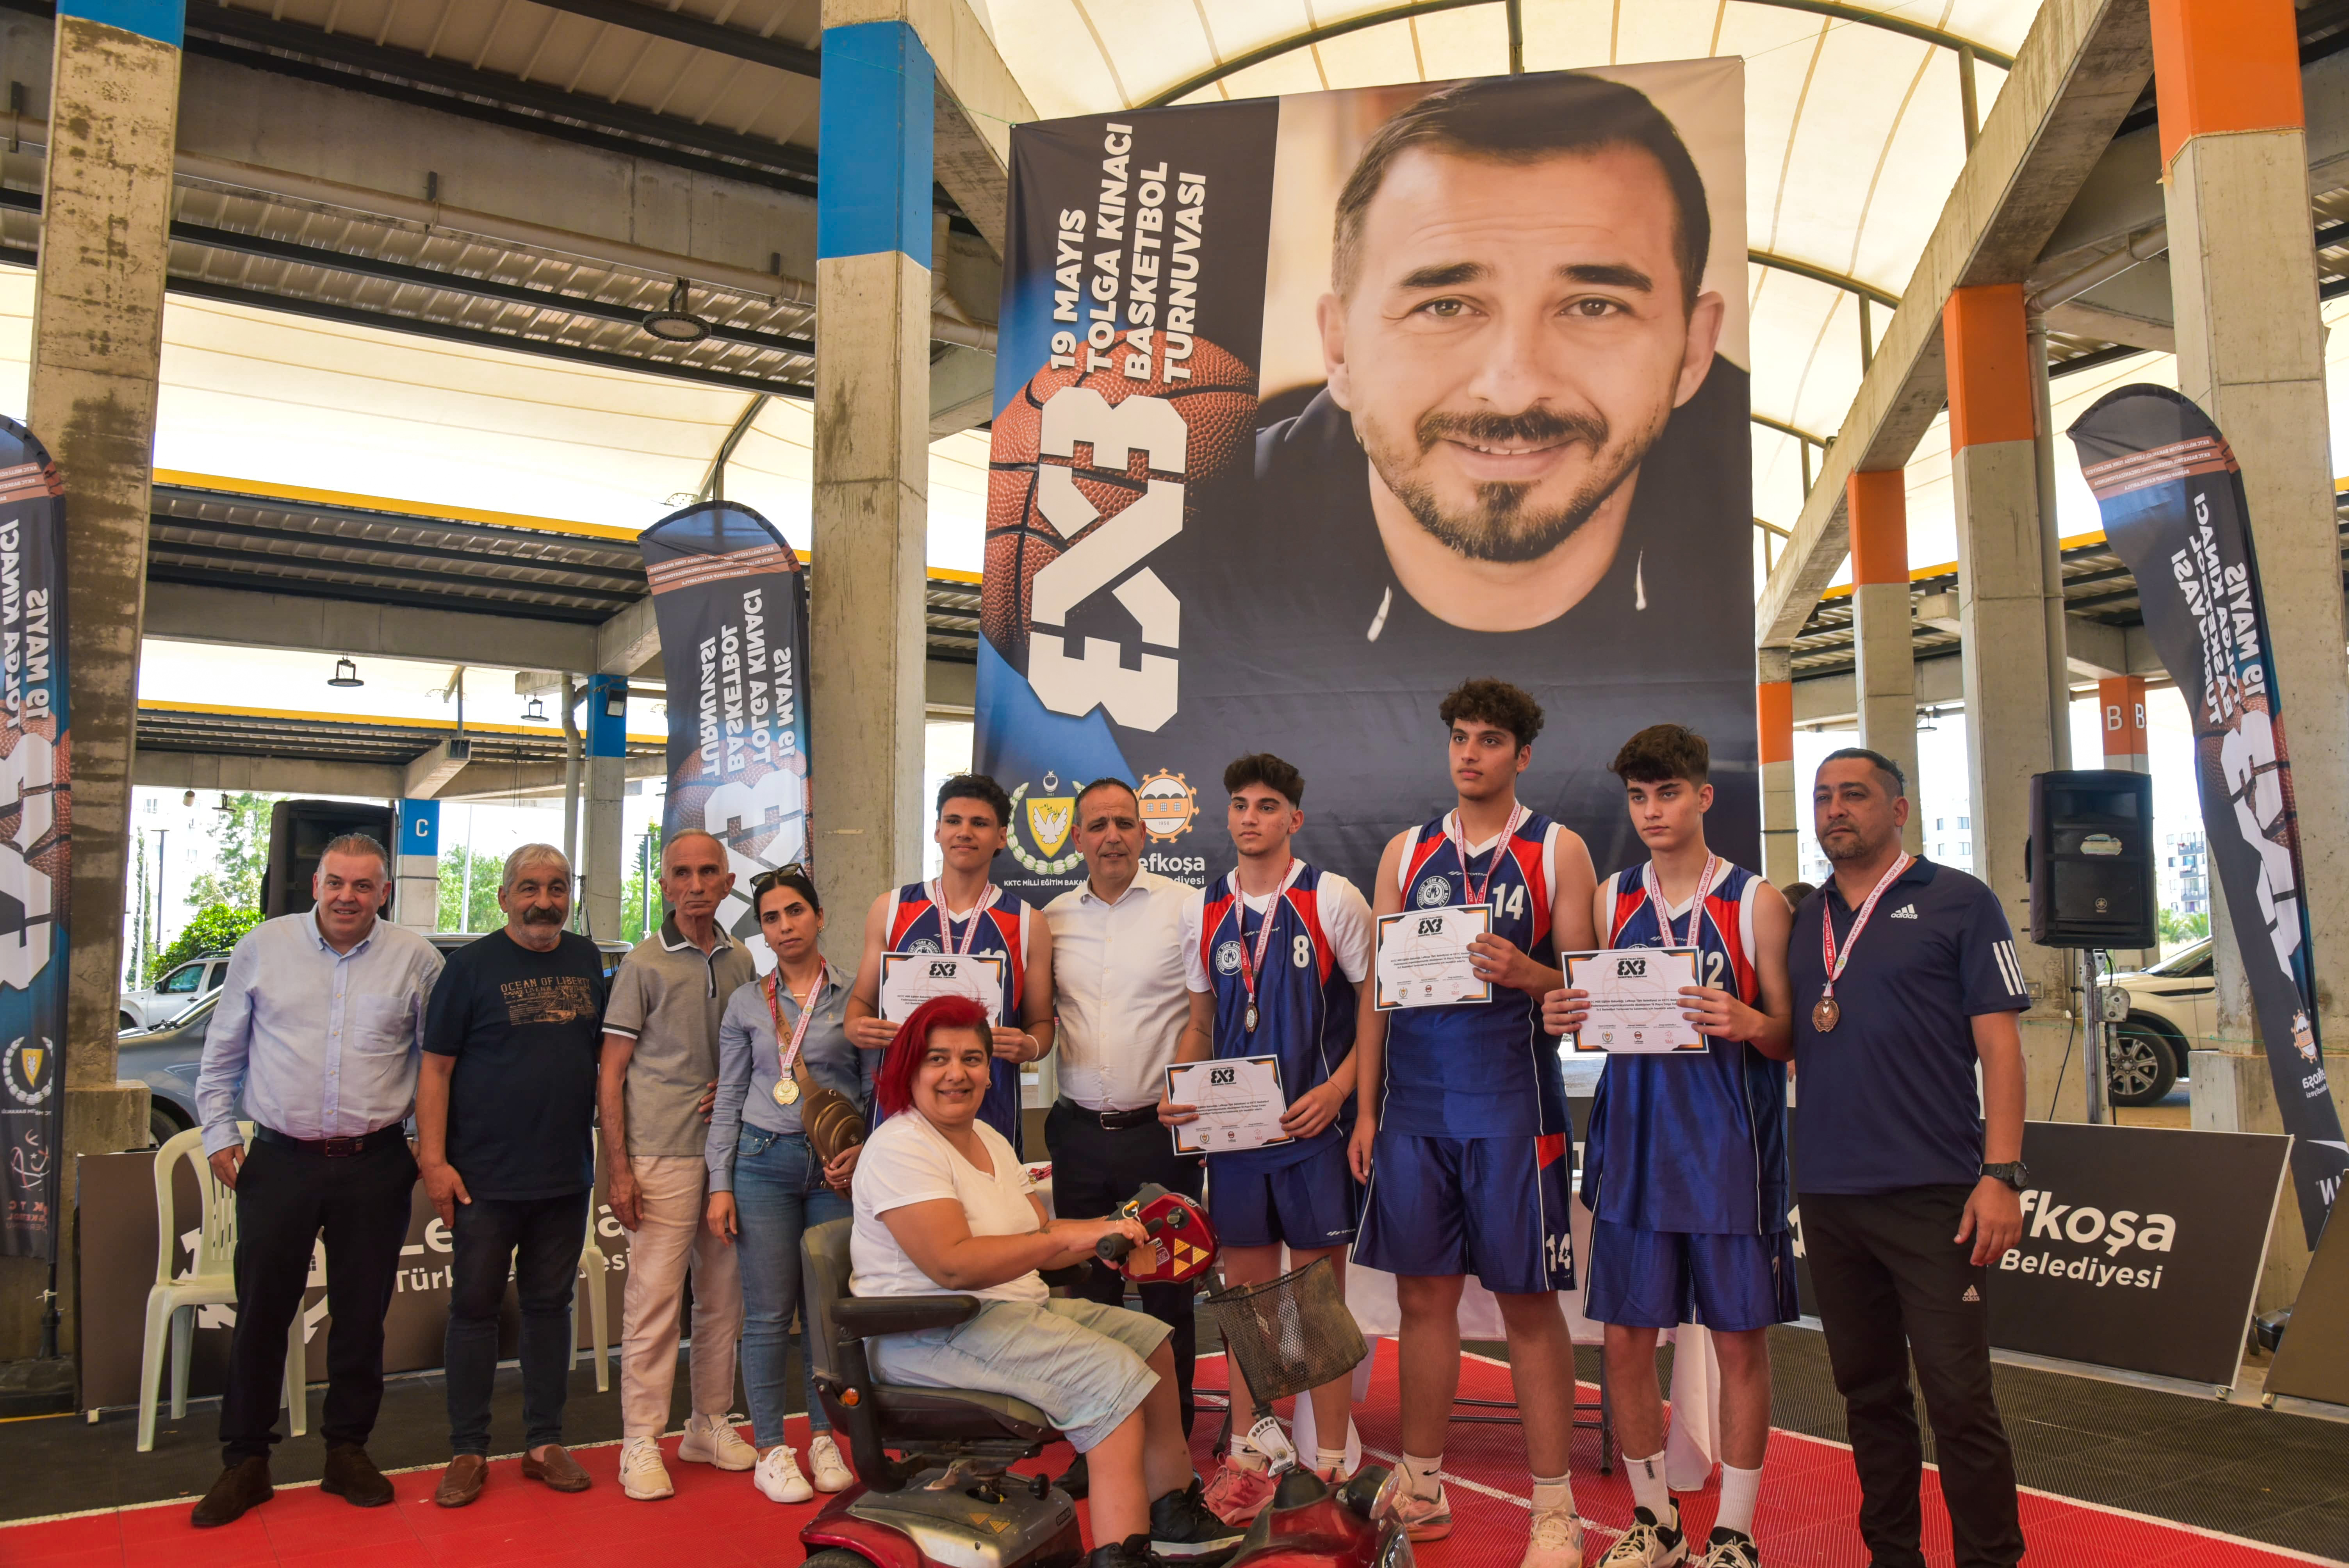 19 Mayıs Tolga Kınacı 3x3 Basketbol Turnuvası,Merkez Lefkoşa’da gerçekleştirildi